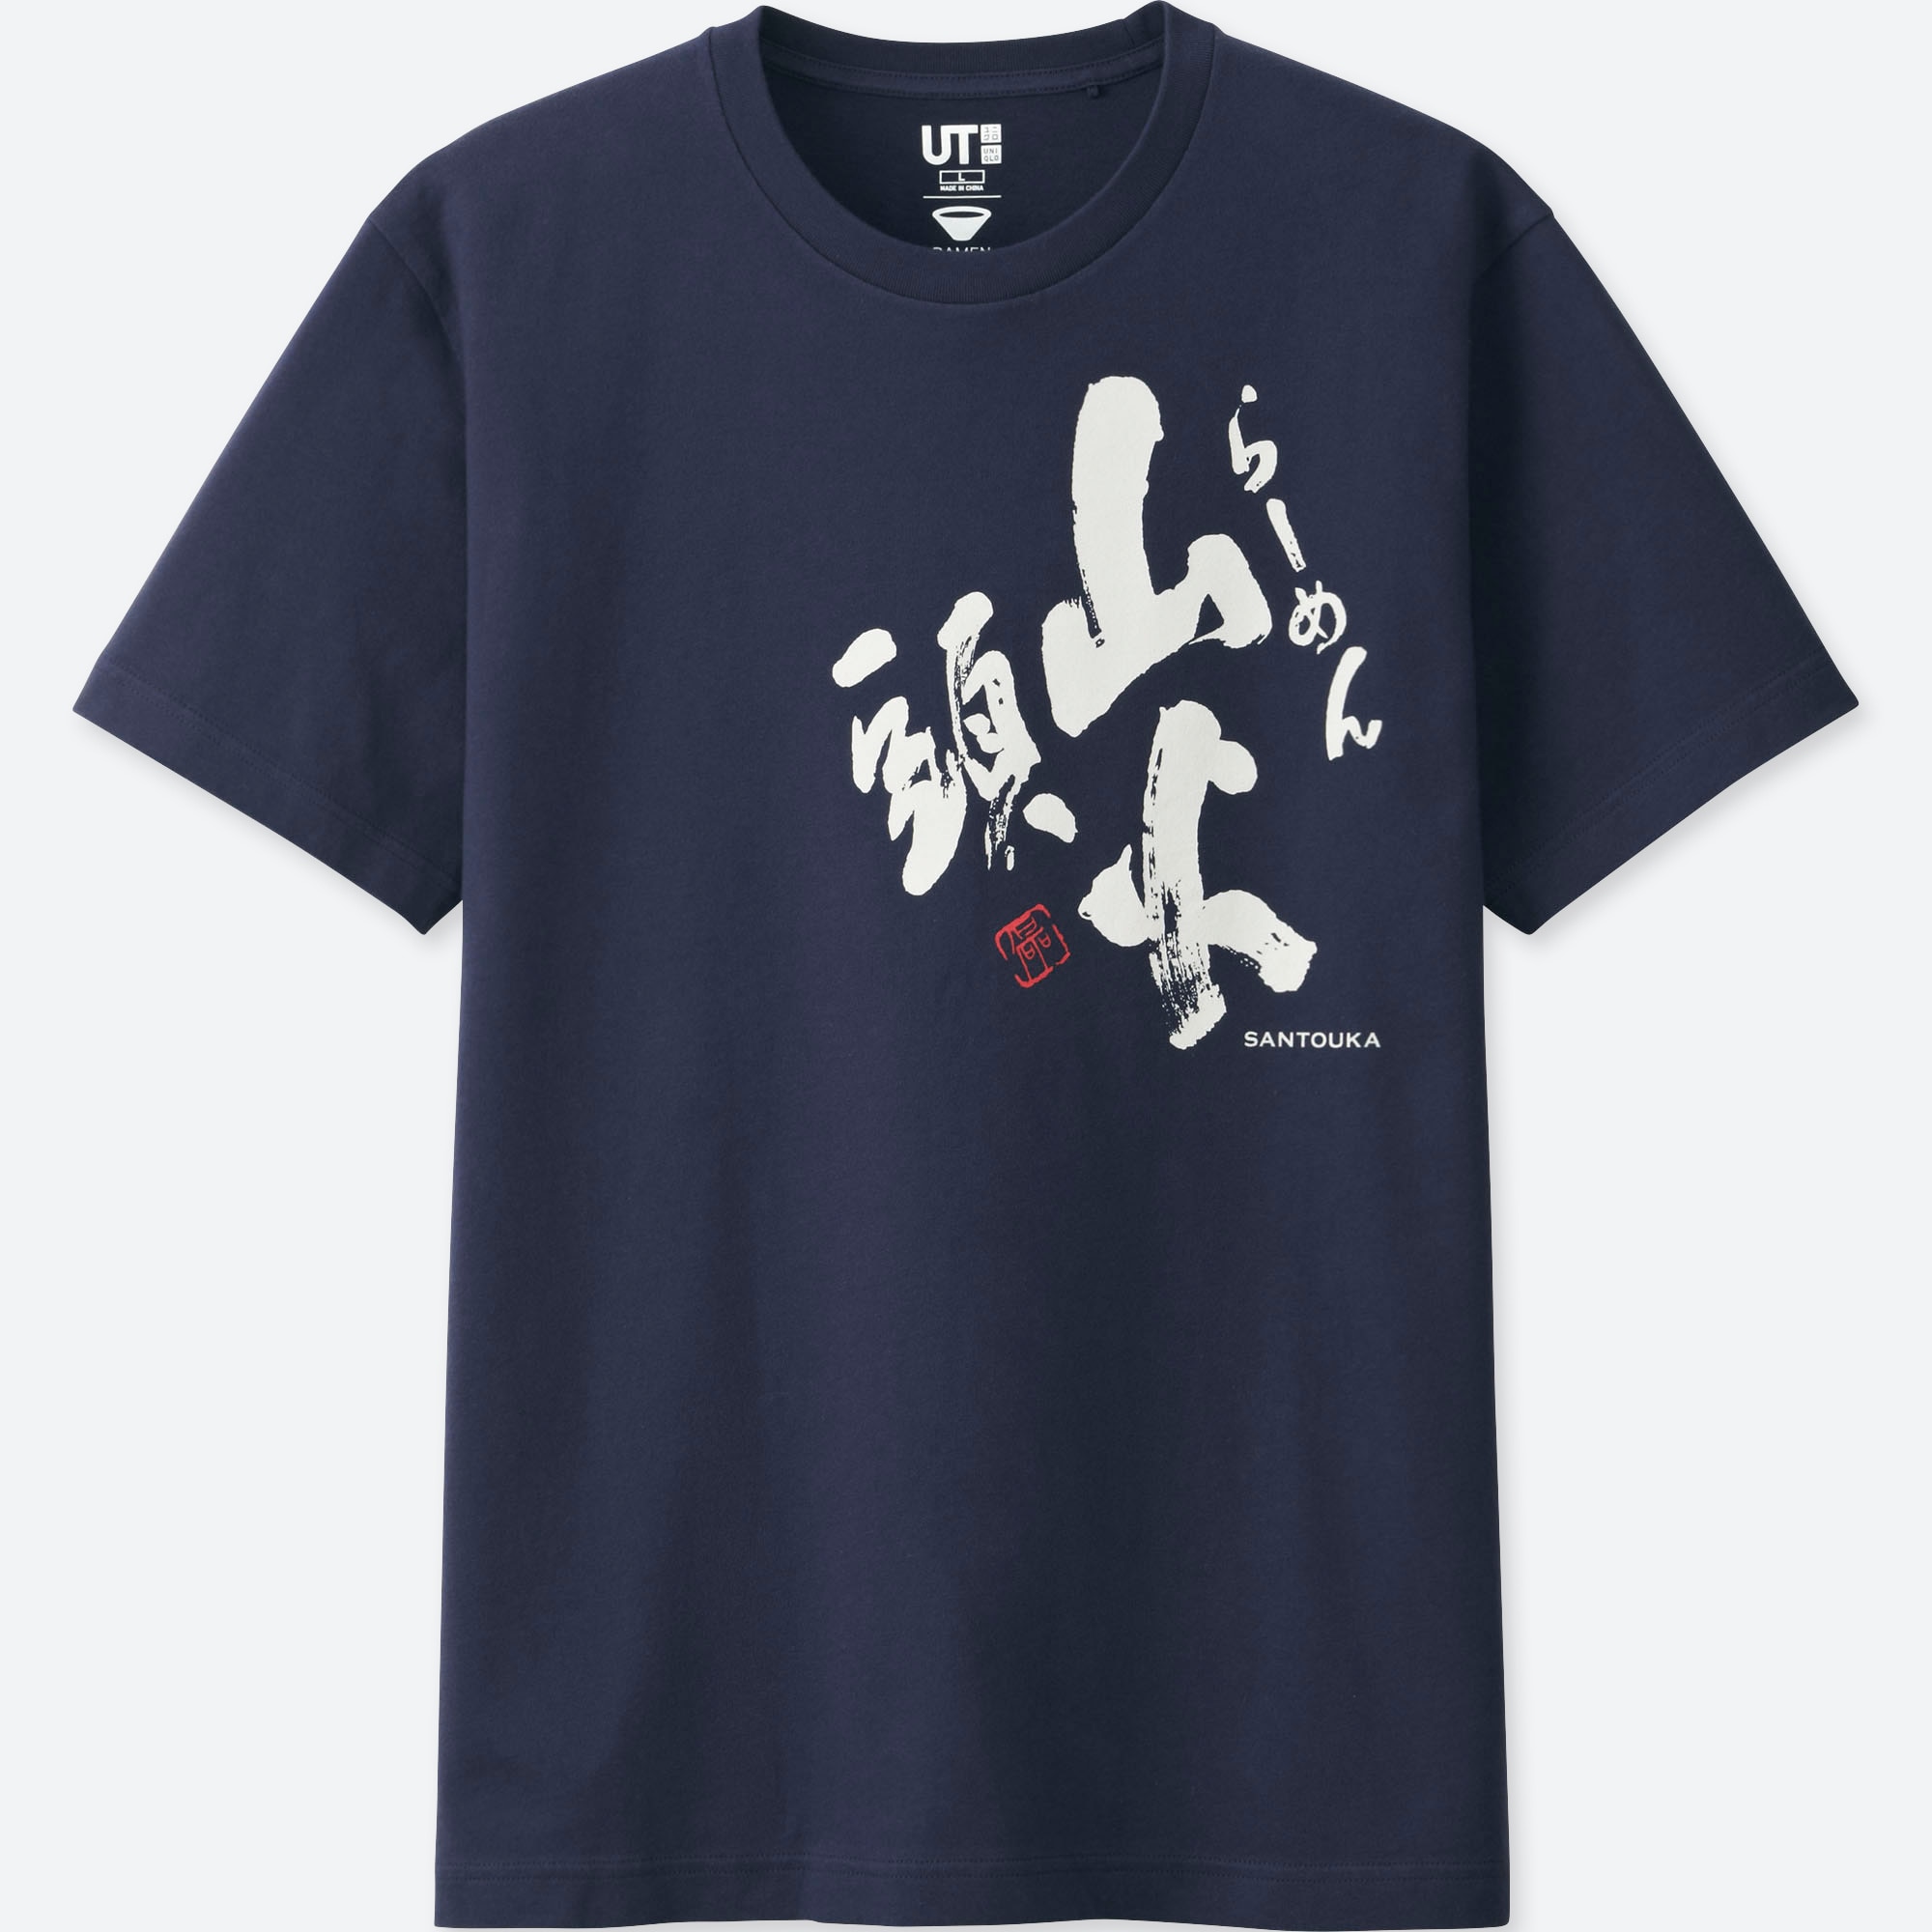 Футболка collection. Футболка юникло. Uniqlo футболка китайская. Футболки в японском стиле. Японская одежда Uniqlo футболка.